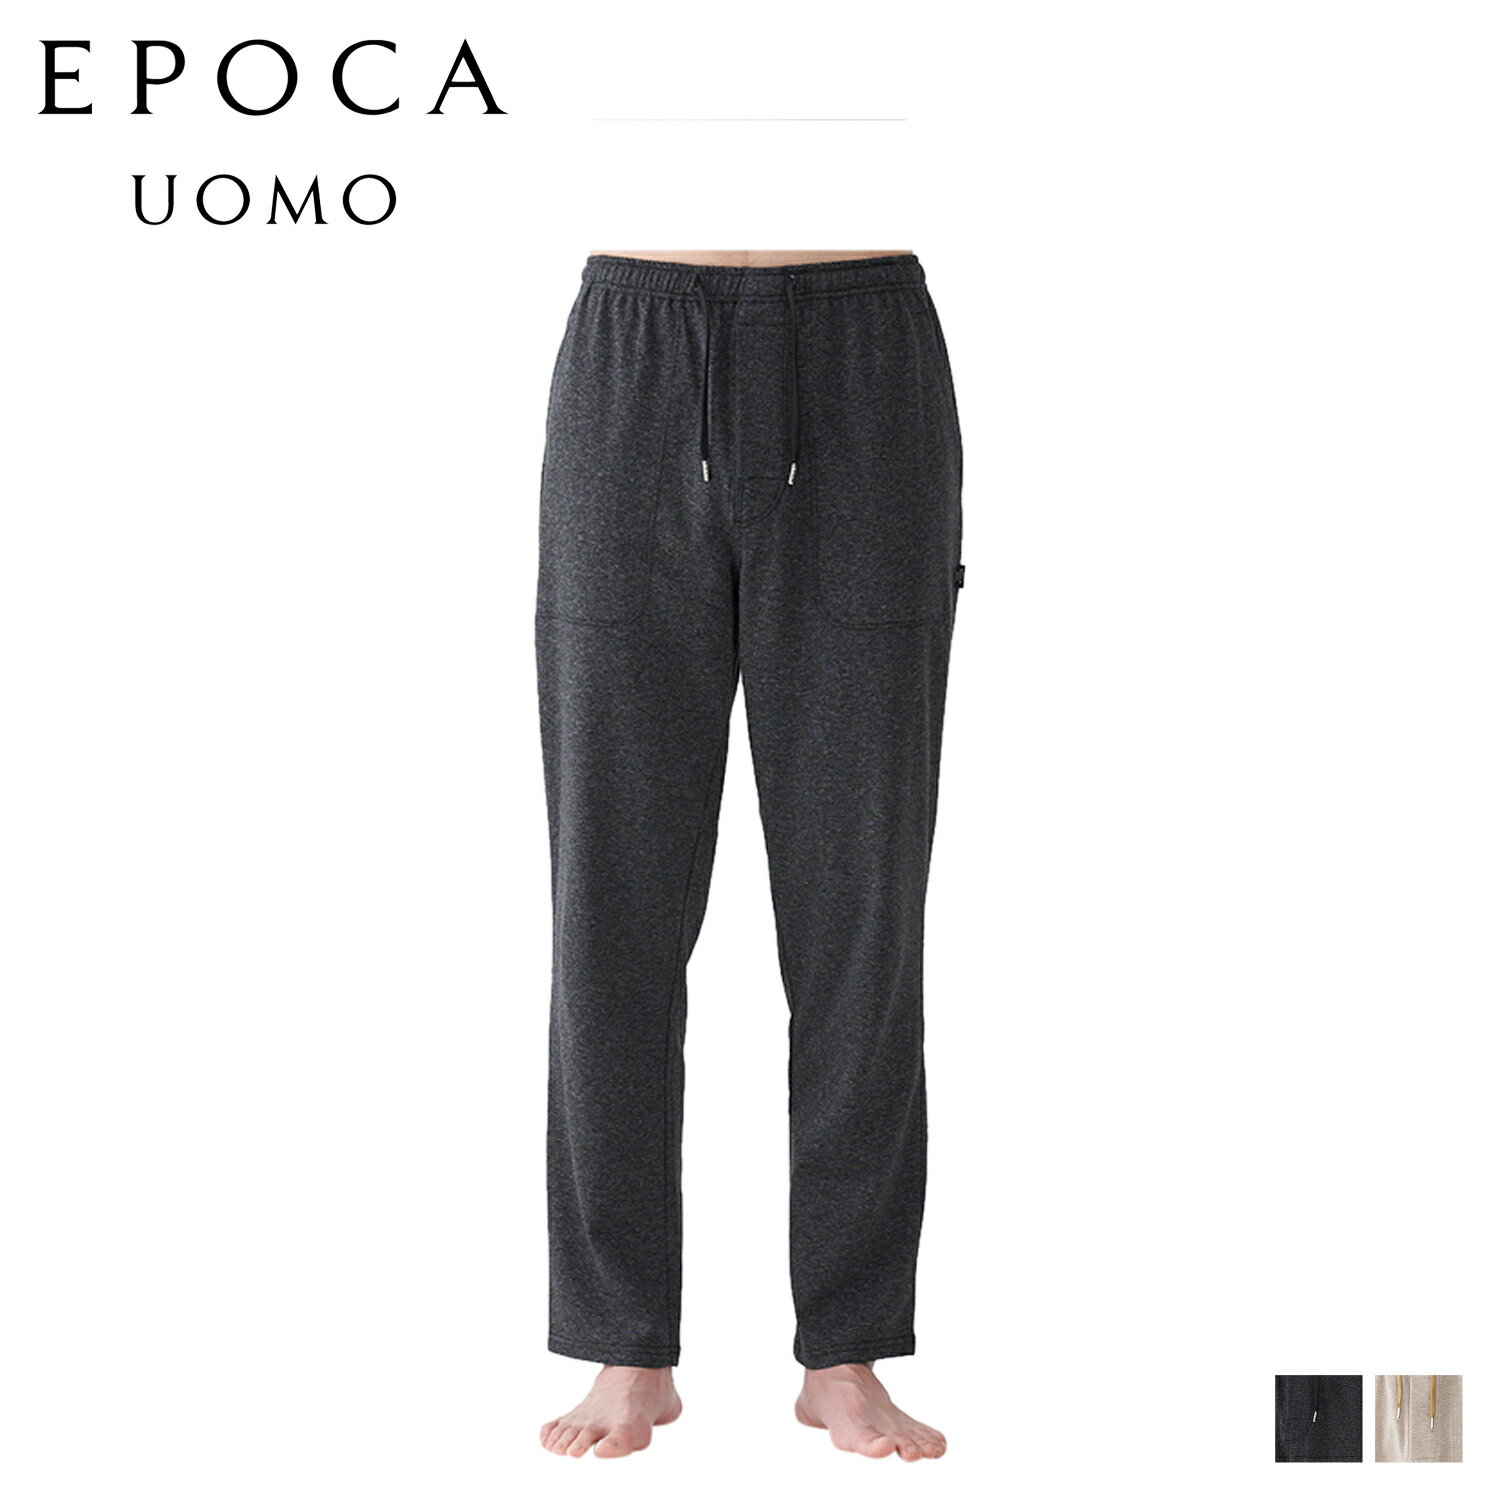 エポカ ウォモ EPOCA UOMO パンツ テーパードパンツ クロップドパンツ ジャージパンツ メンズ LONG TAPERED PANTS ブラック ベージュ 黒 0390-65